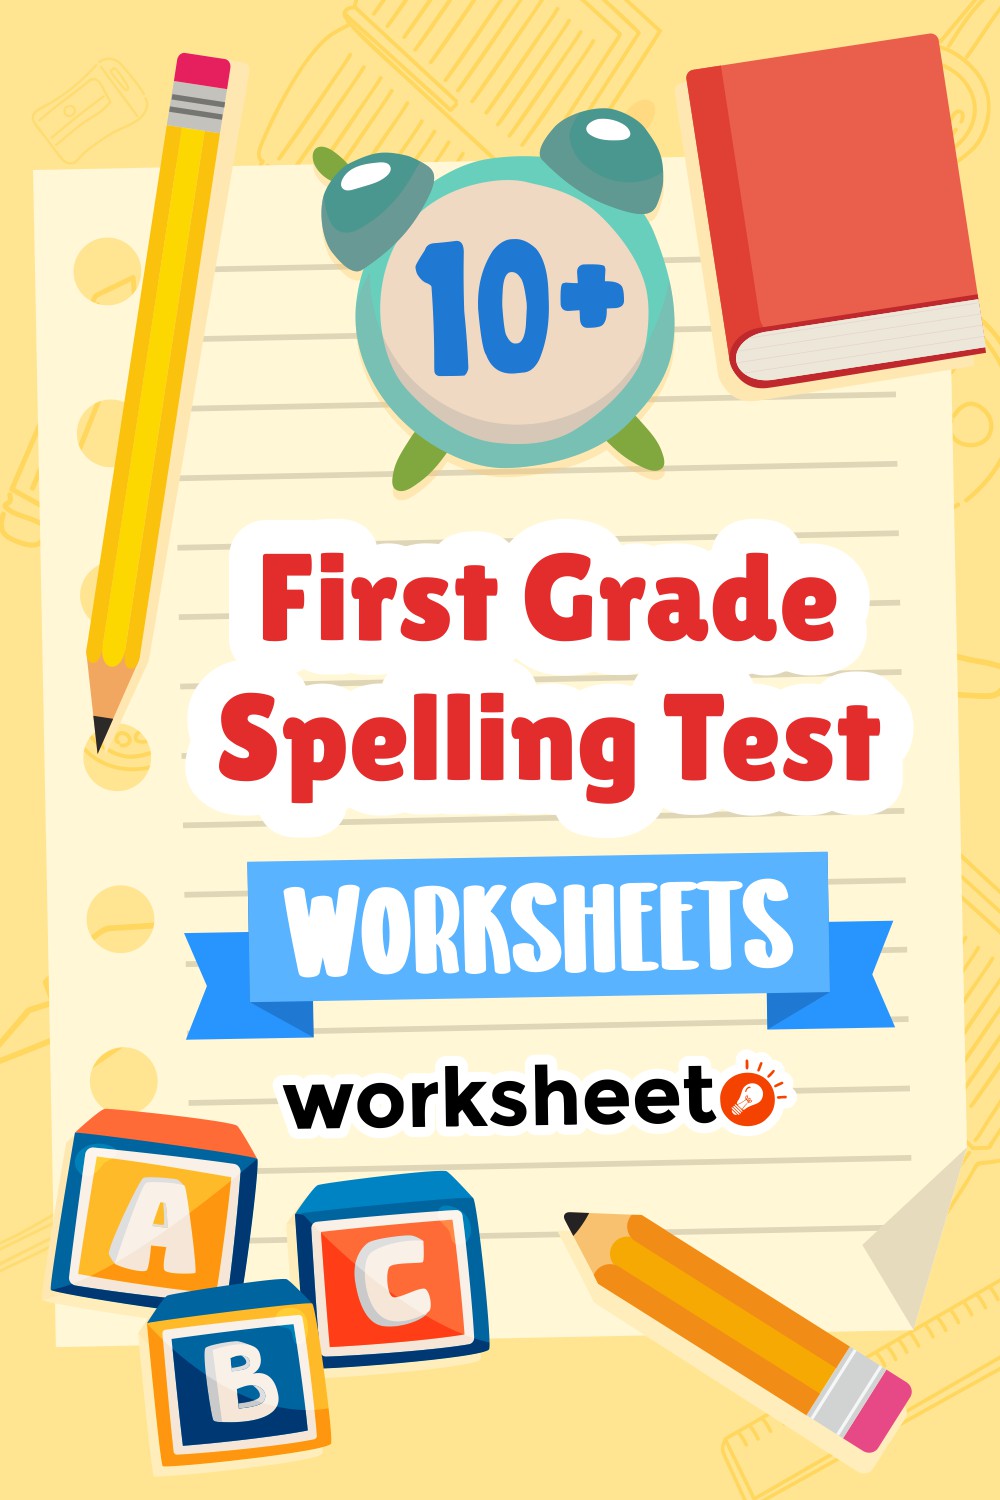 First Grade Spelling Test Worksheets